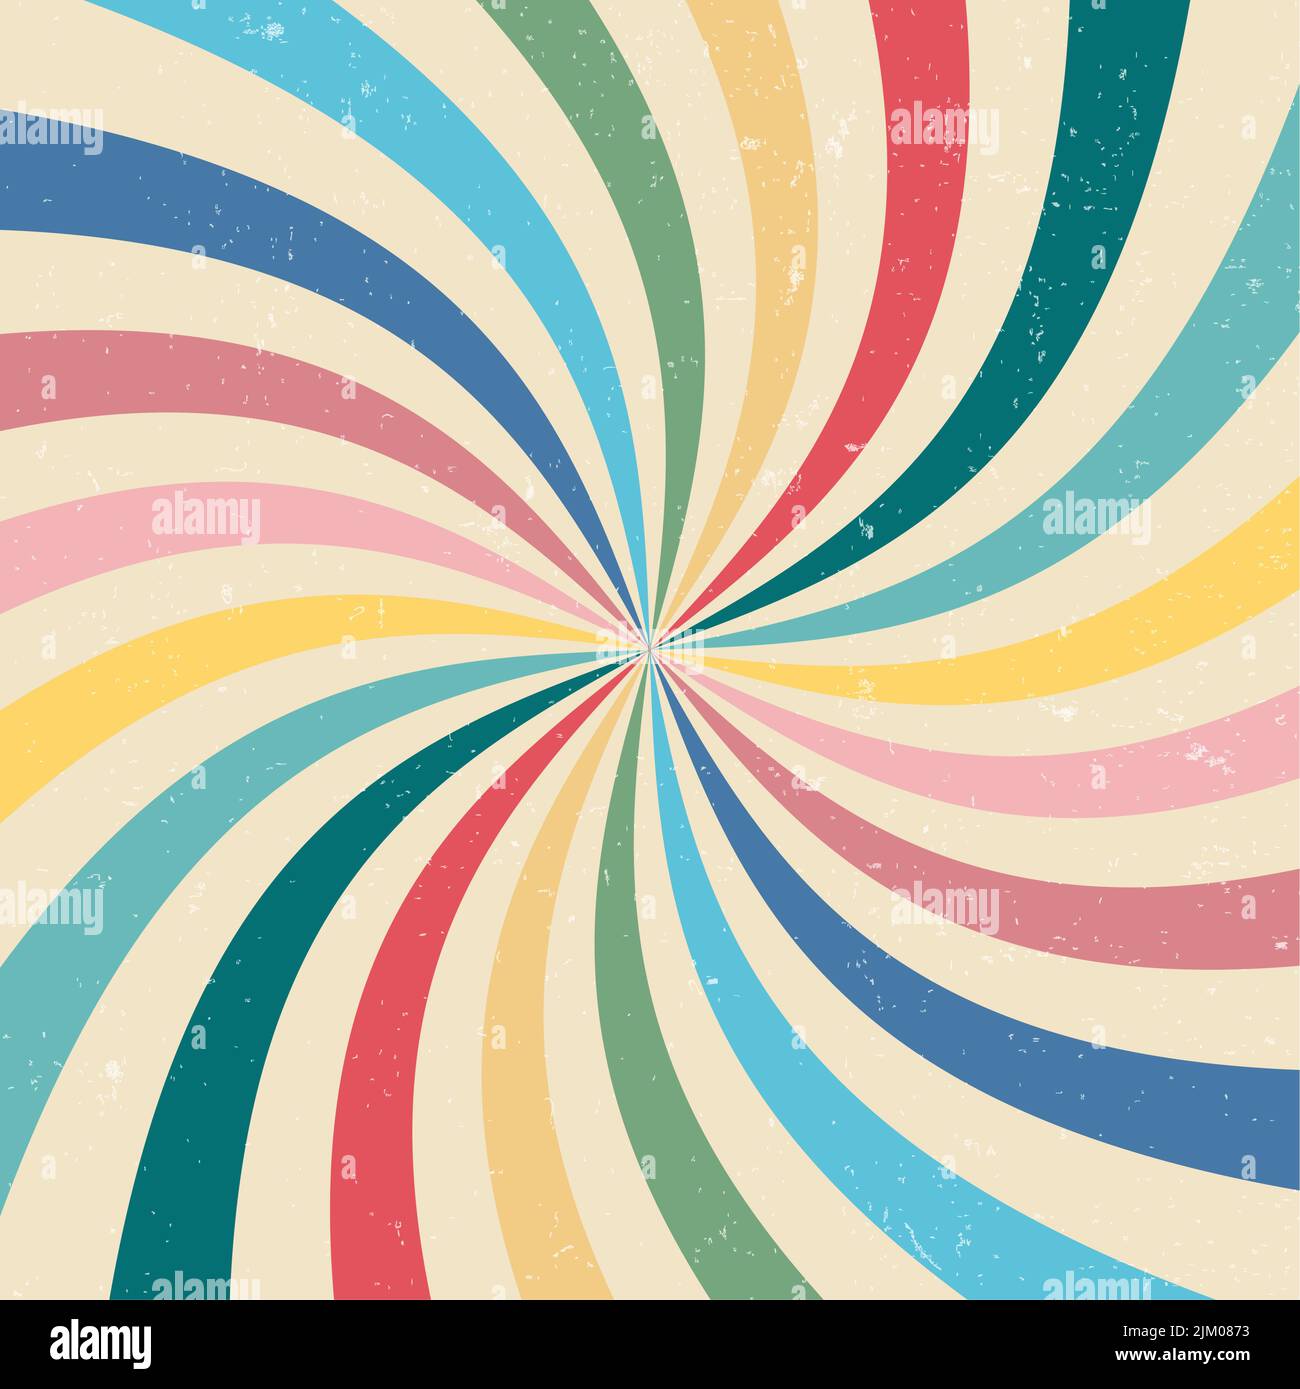 Weicher, pastellfarbener Hintergrund im Retro-Stil, Vektorgrafik Stock Vektor